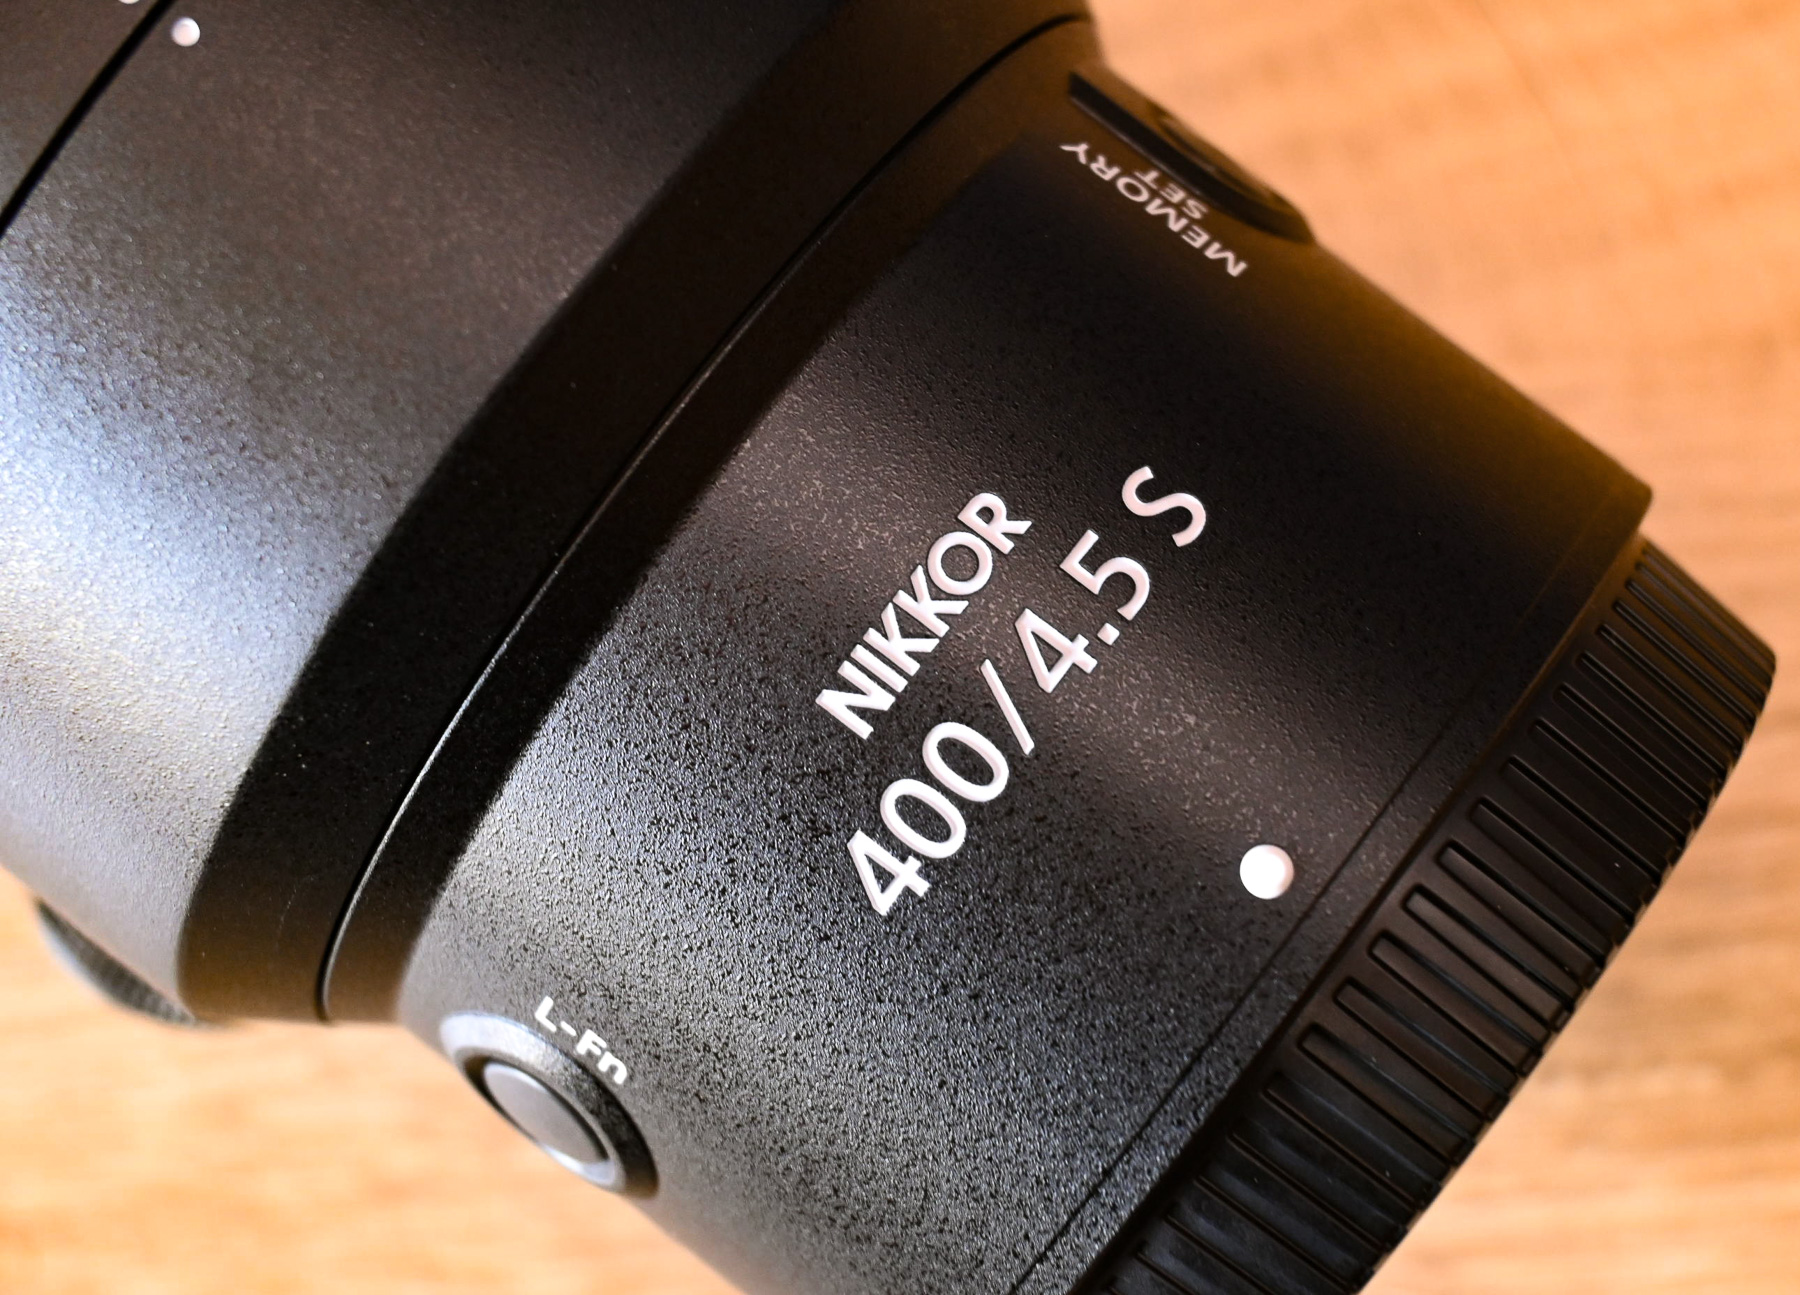 Maggiori informazioni su "Nikkor Z 400mm f/4.5 S VR : unboxing e ... ma si, hanno sempre ragione loro !"